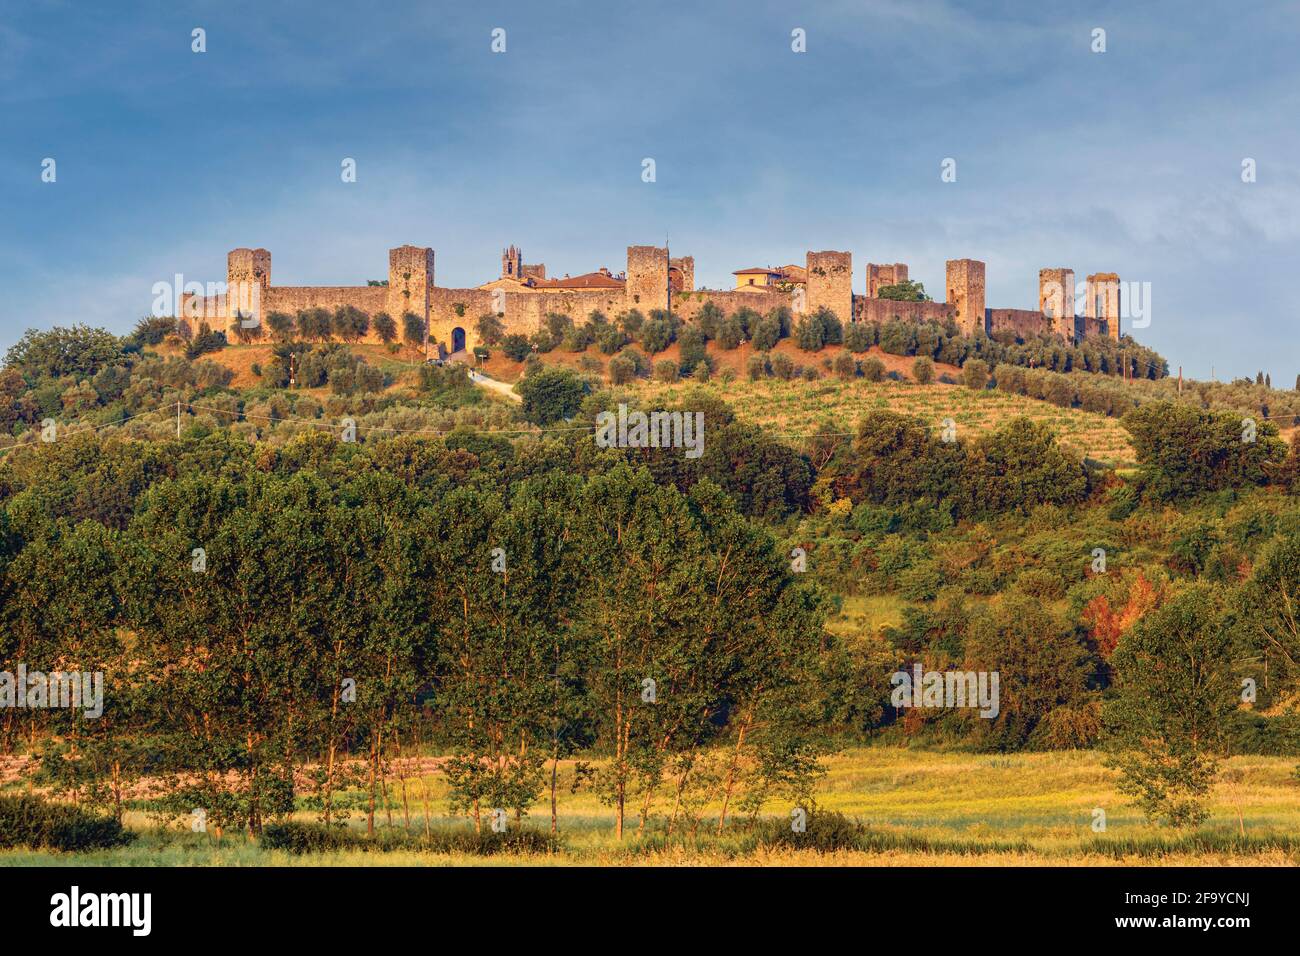 Monteriggioni, province de Sienne, Toscane, Italie. Ville médiévale fortifiée datant du XIIIe siècle. Banque D'Images